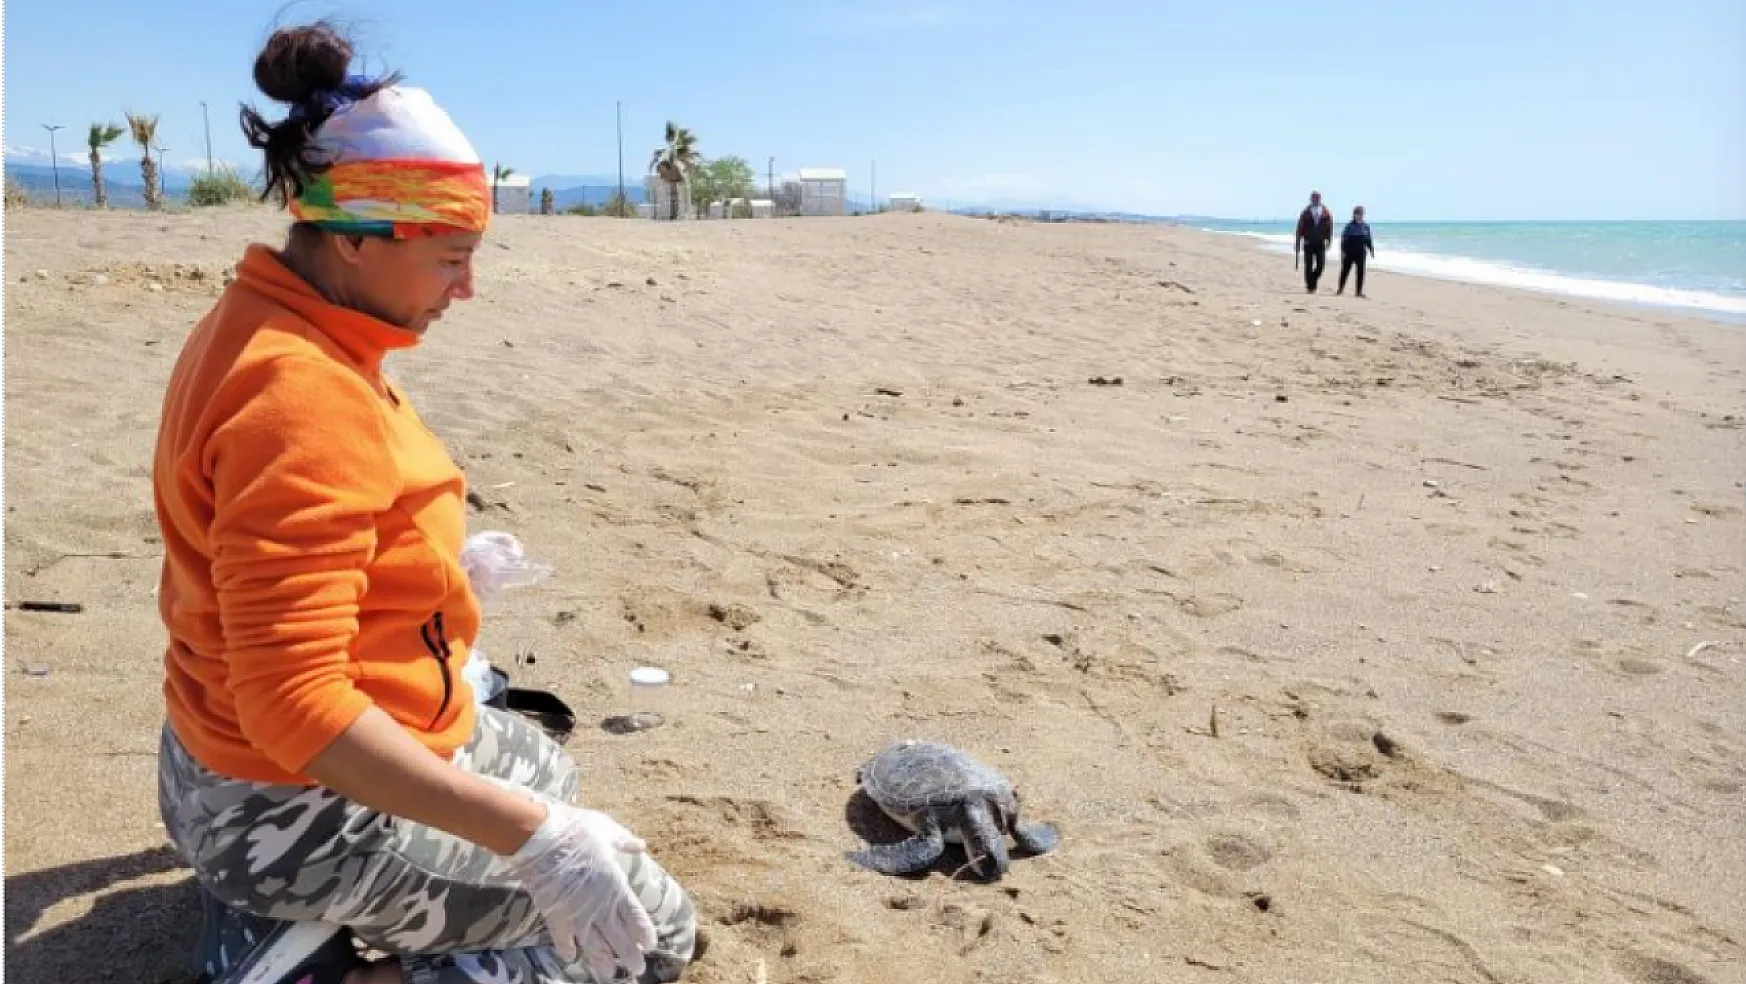 Nesli tükenme tehlikesi altındaki yeşil deniz kaplumbağası ölü bulundu